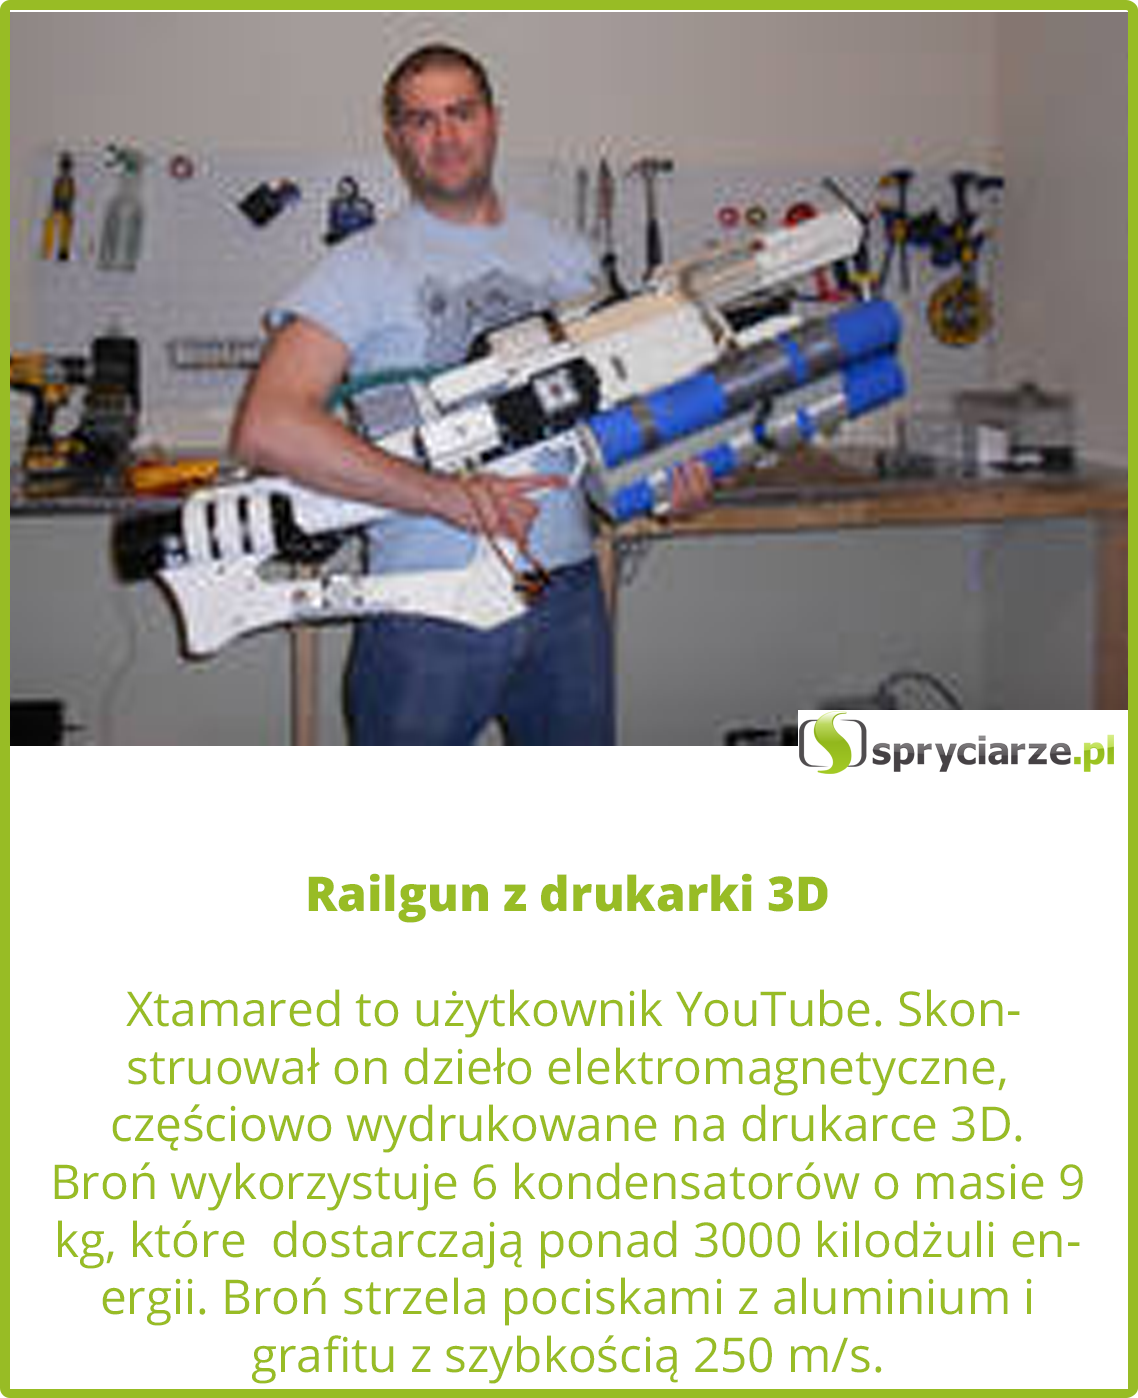 Railgun z drukarki 3D